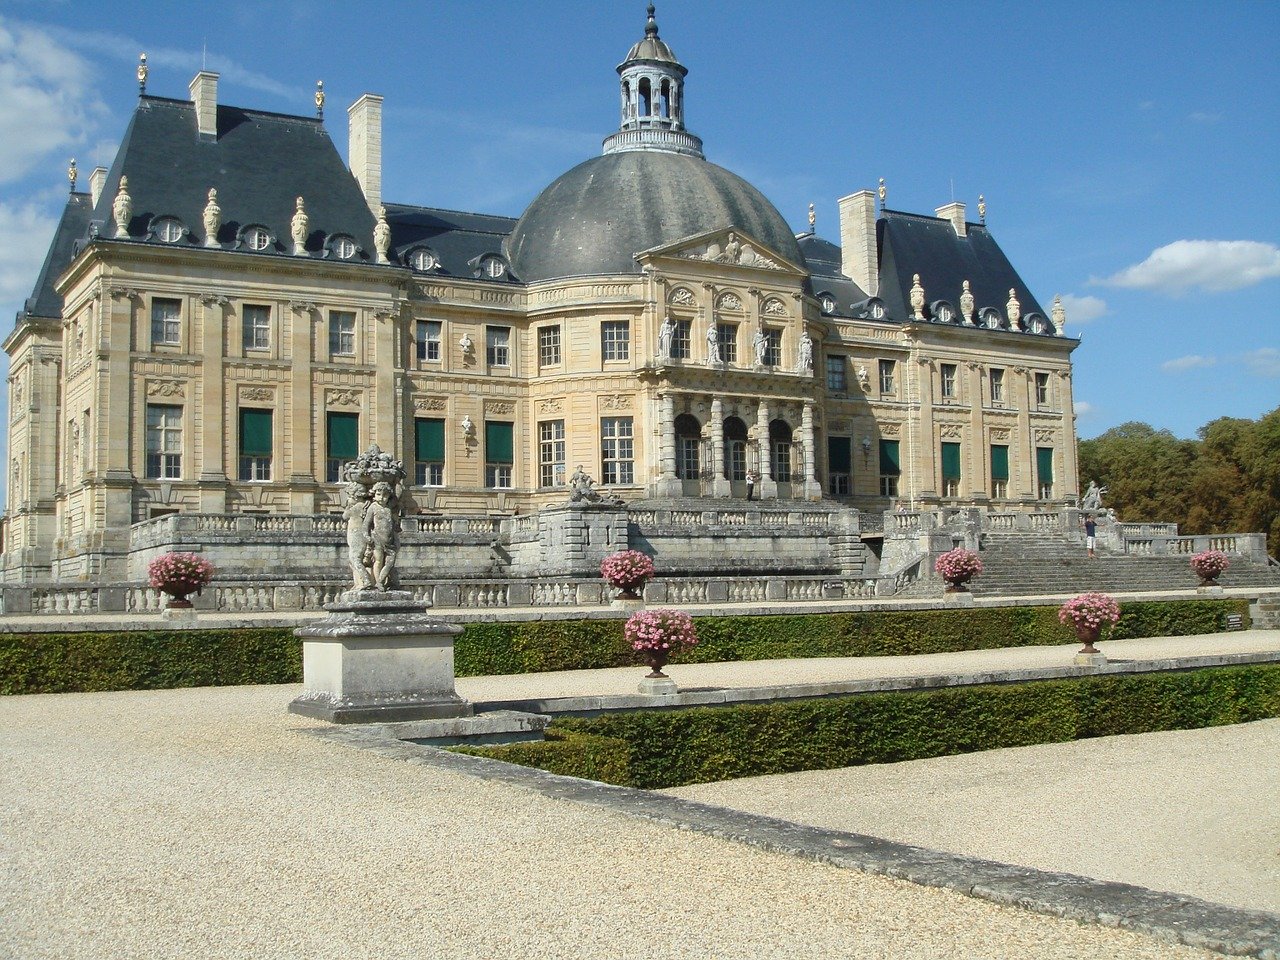 Chateau de Vaux-le-Vicomte, France; tourism and visitor guide